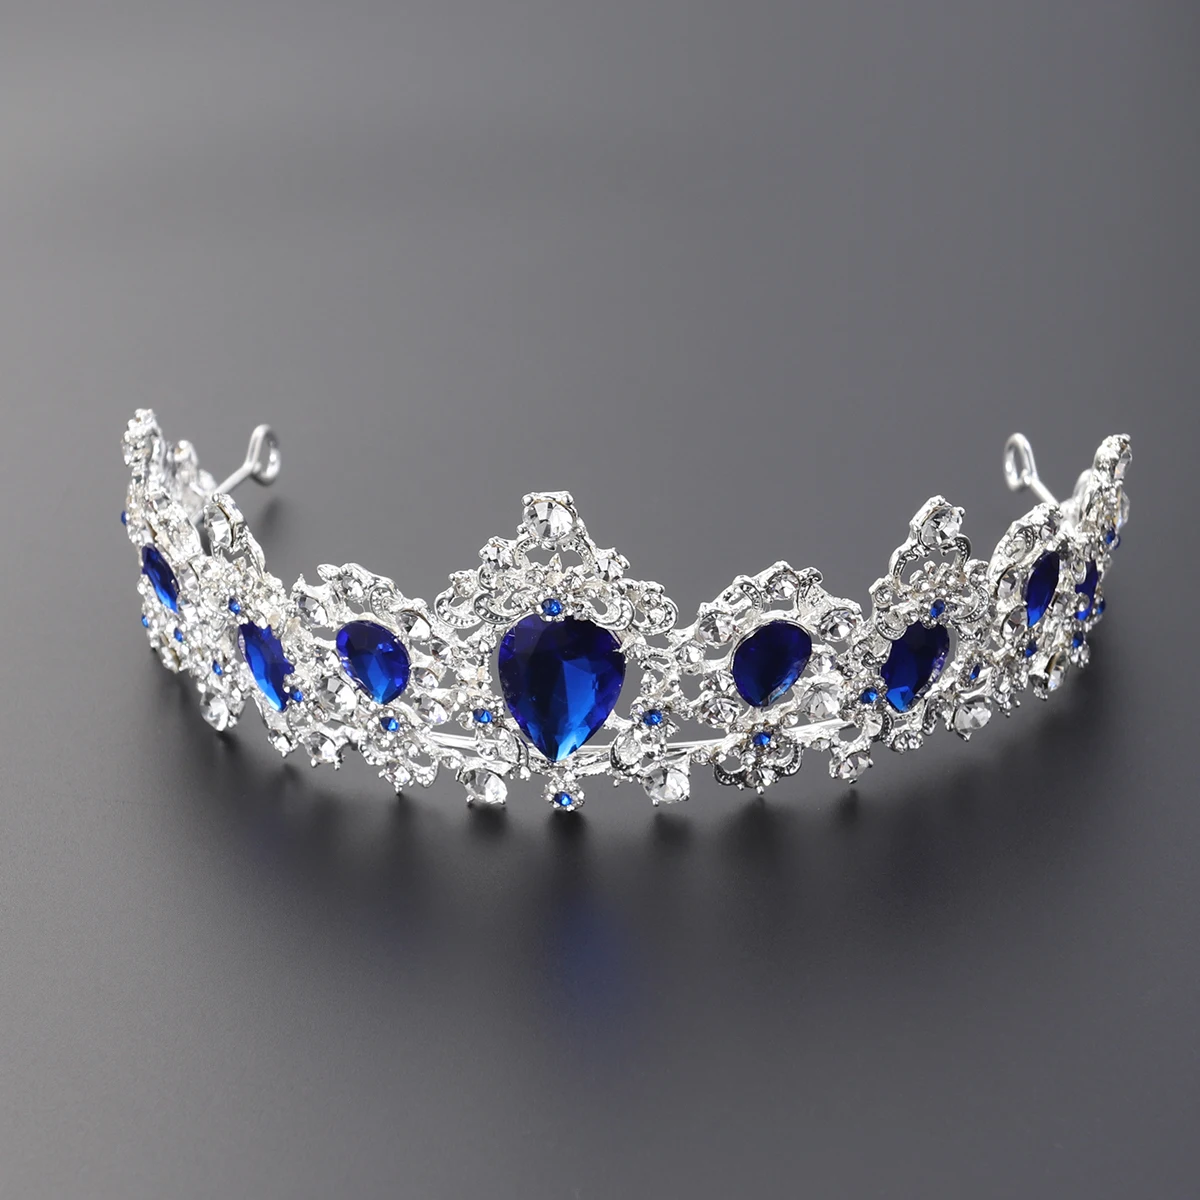 Королевская Хрустальная тиара свадебная корона принцесса головные уборы Свадебные аксессуары для волос(серебряная основа, синий